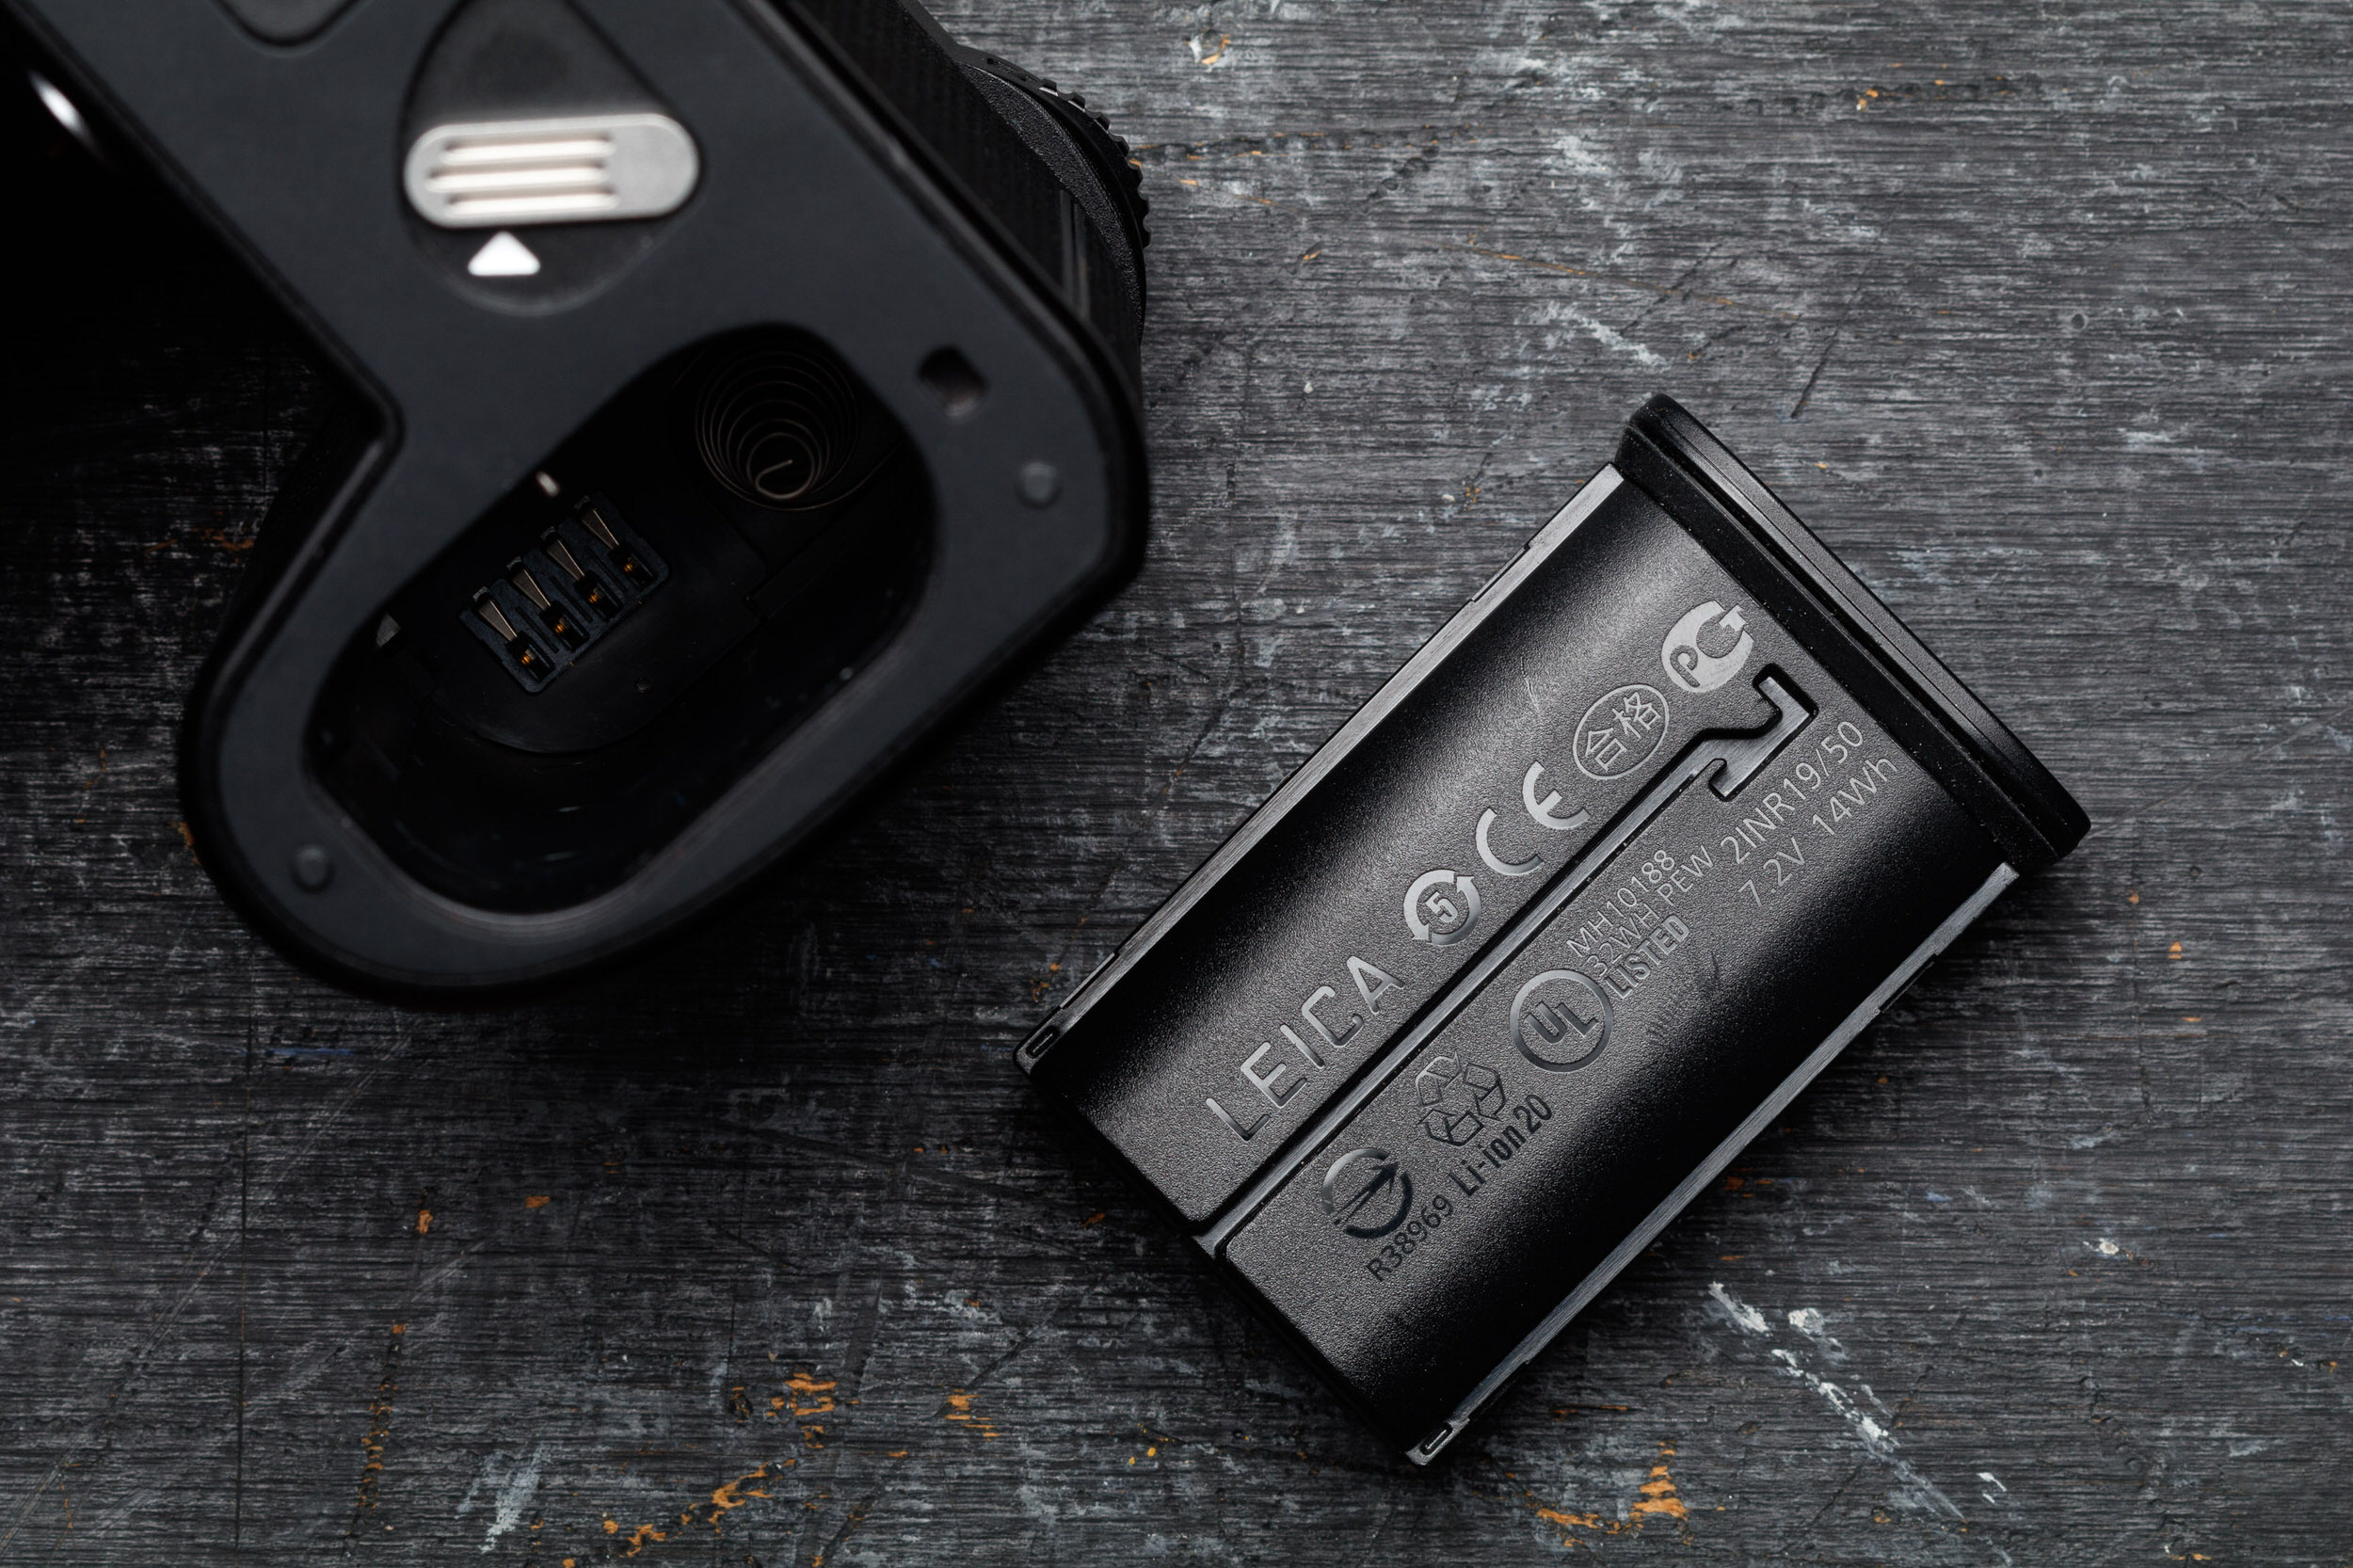 Leica ra mắt máy ảnh SL2-S, phiên bản tập trung vào quay video hơn của chiếc SL2